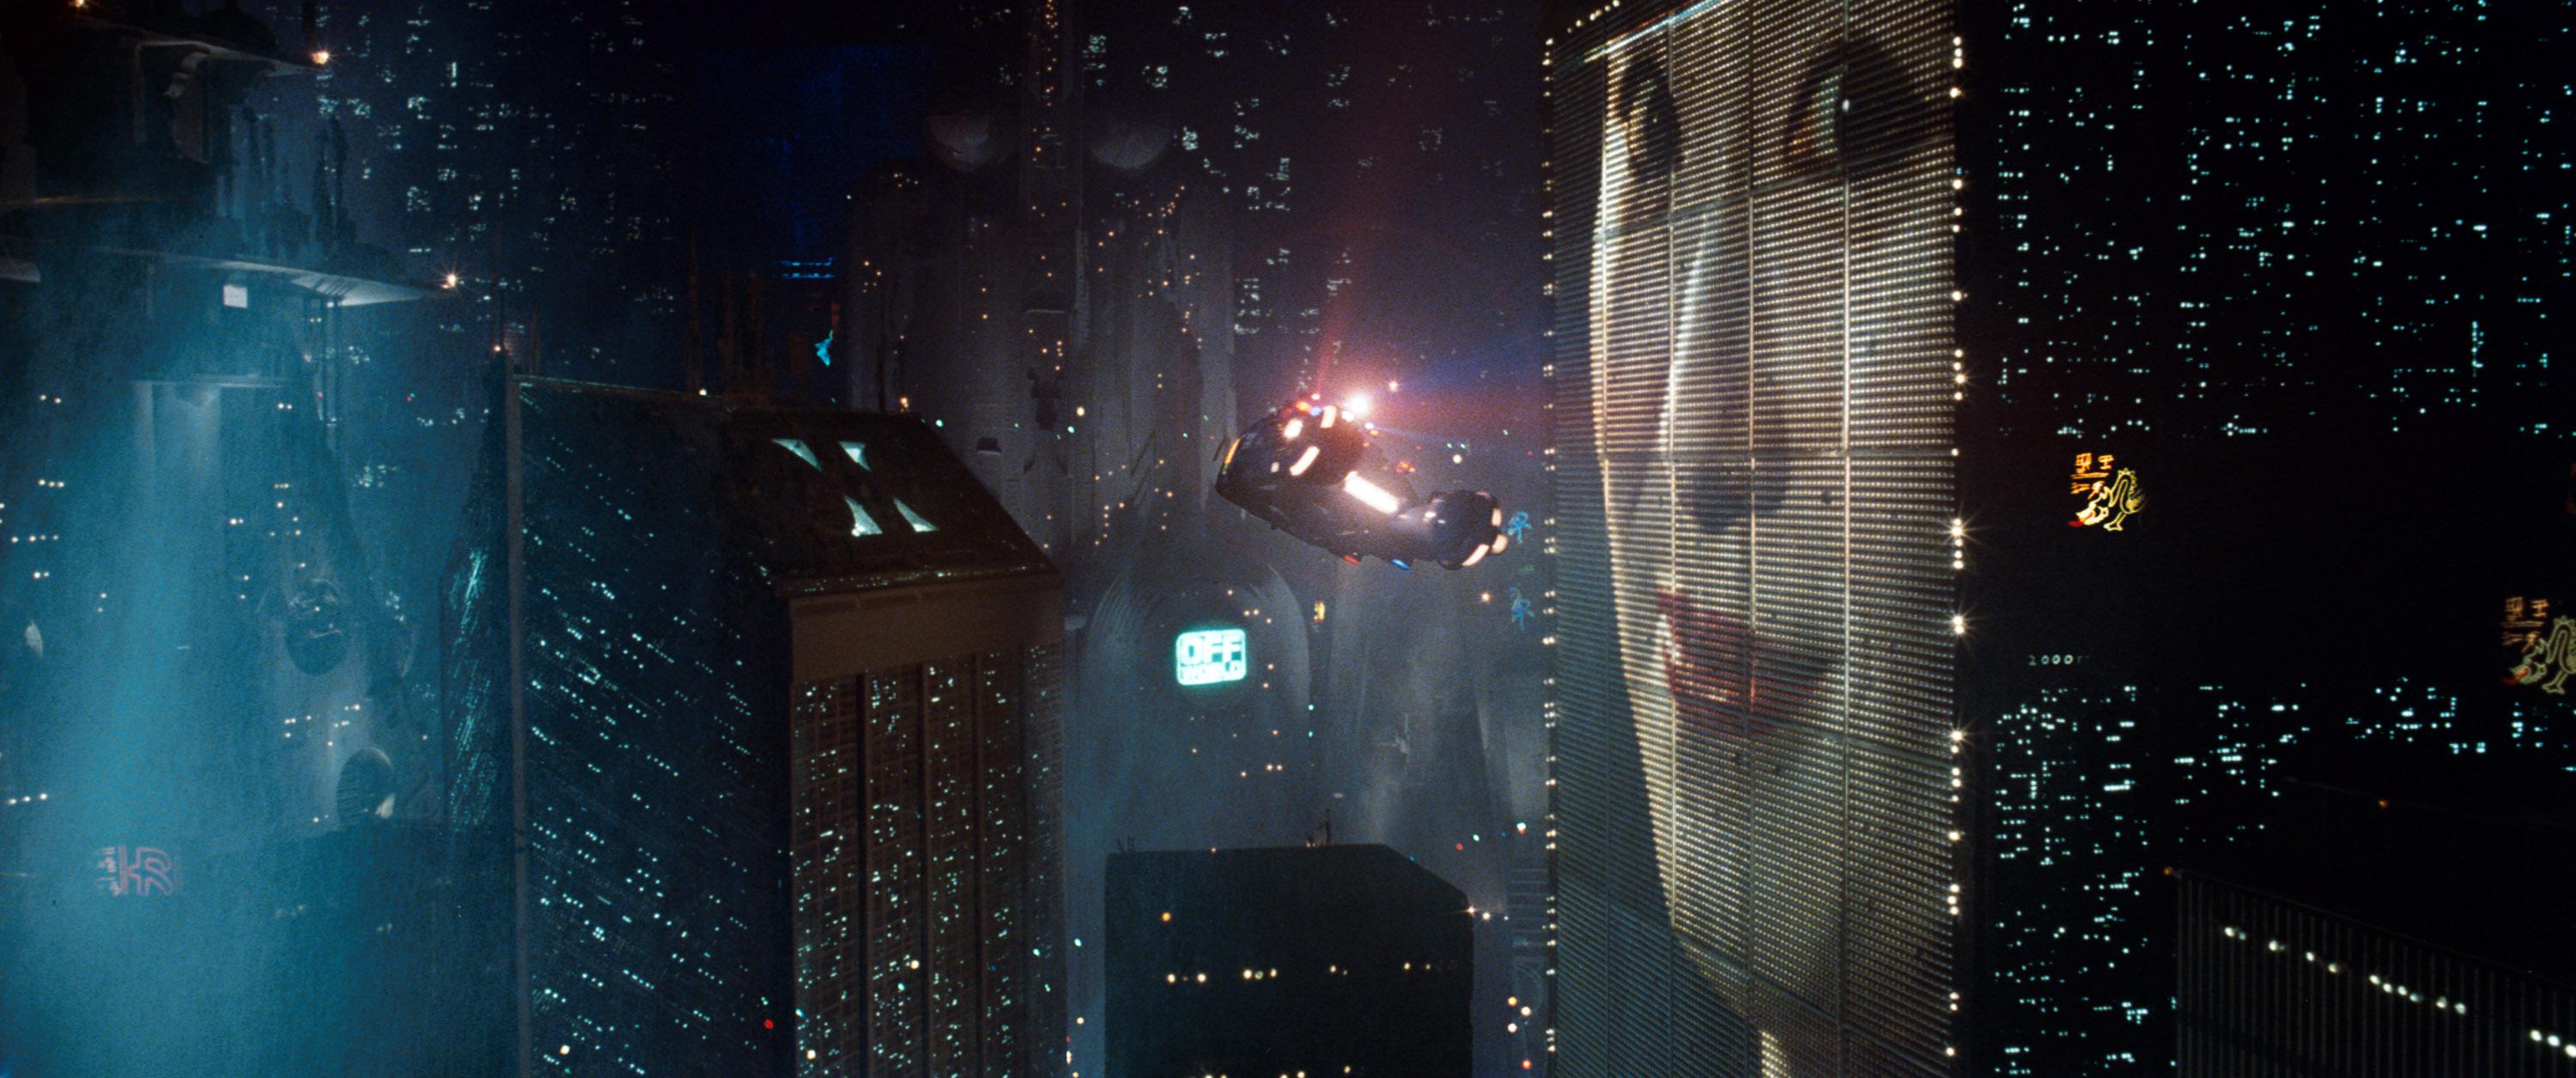 Blade Runner Wallpapers Full HD CR8199M   4USkY 3000x1255